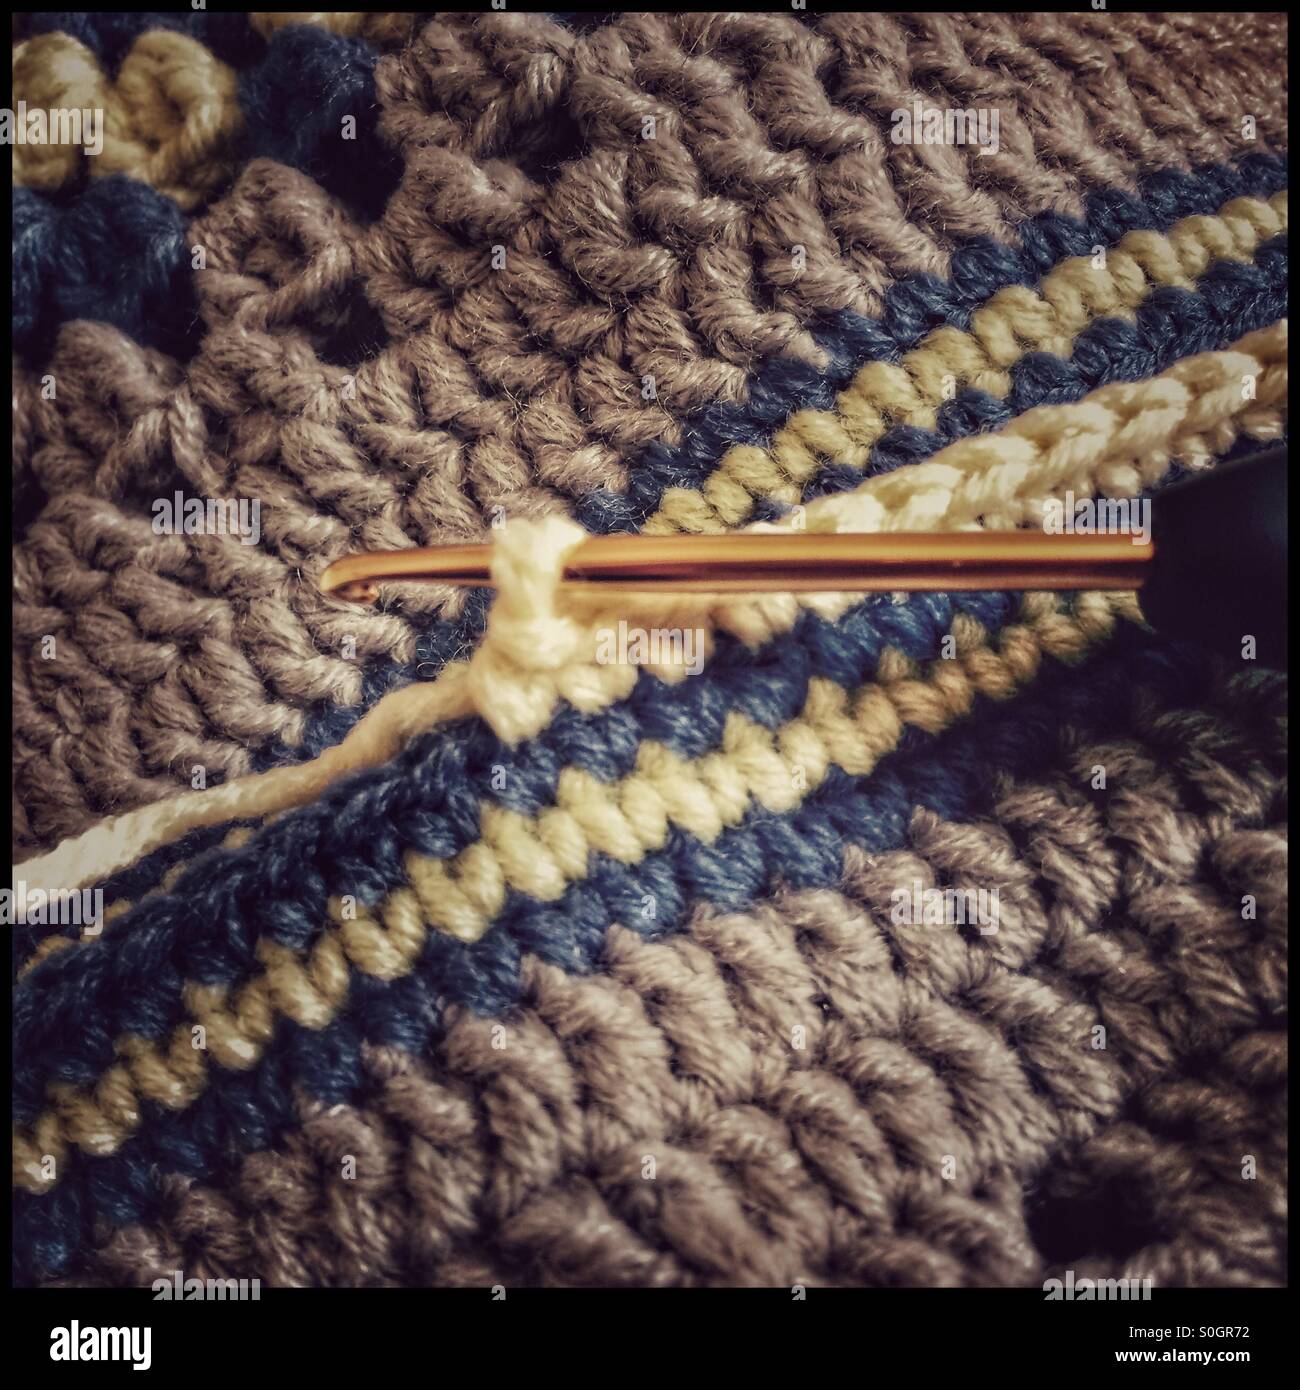 Ago a crochet in lavori all'uncinetto Foto stock - Alamy